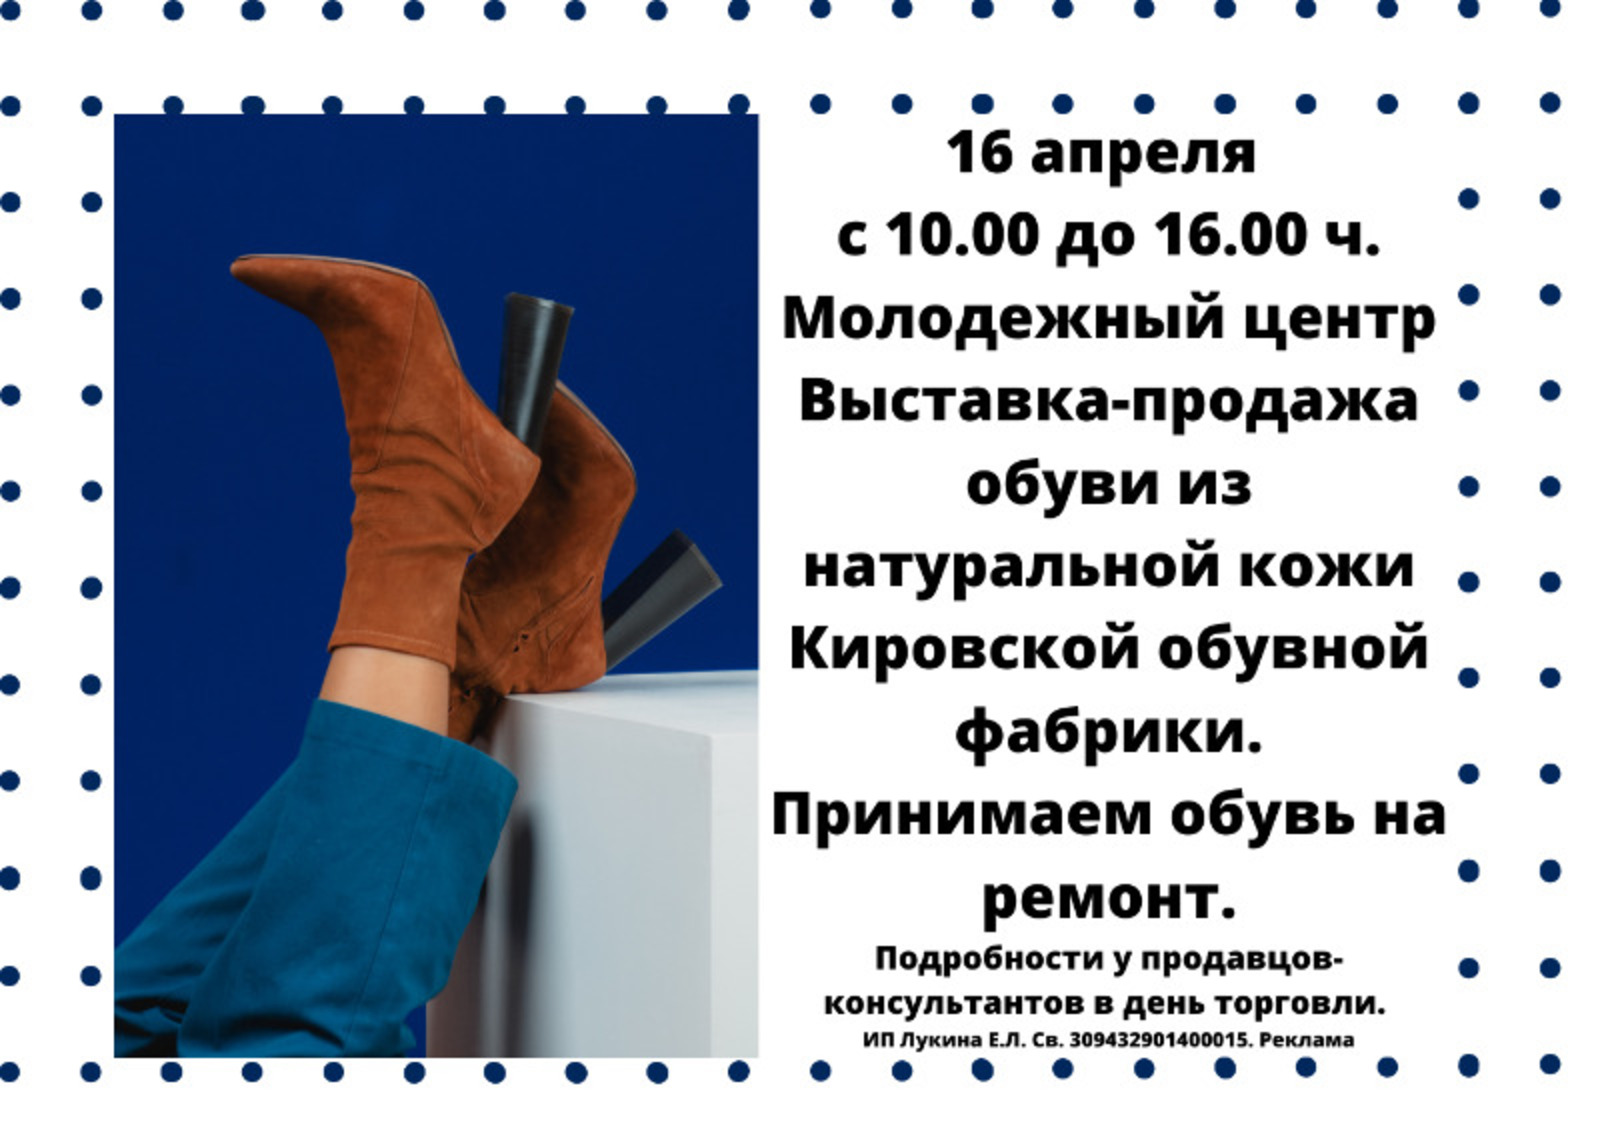 Выставка-продажа обуви из натуральной кожи Кировской обувной фабрики